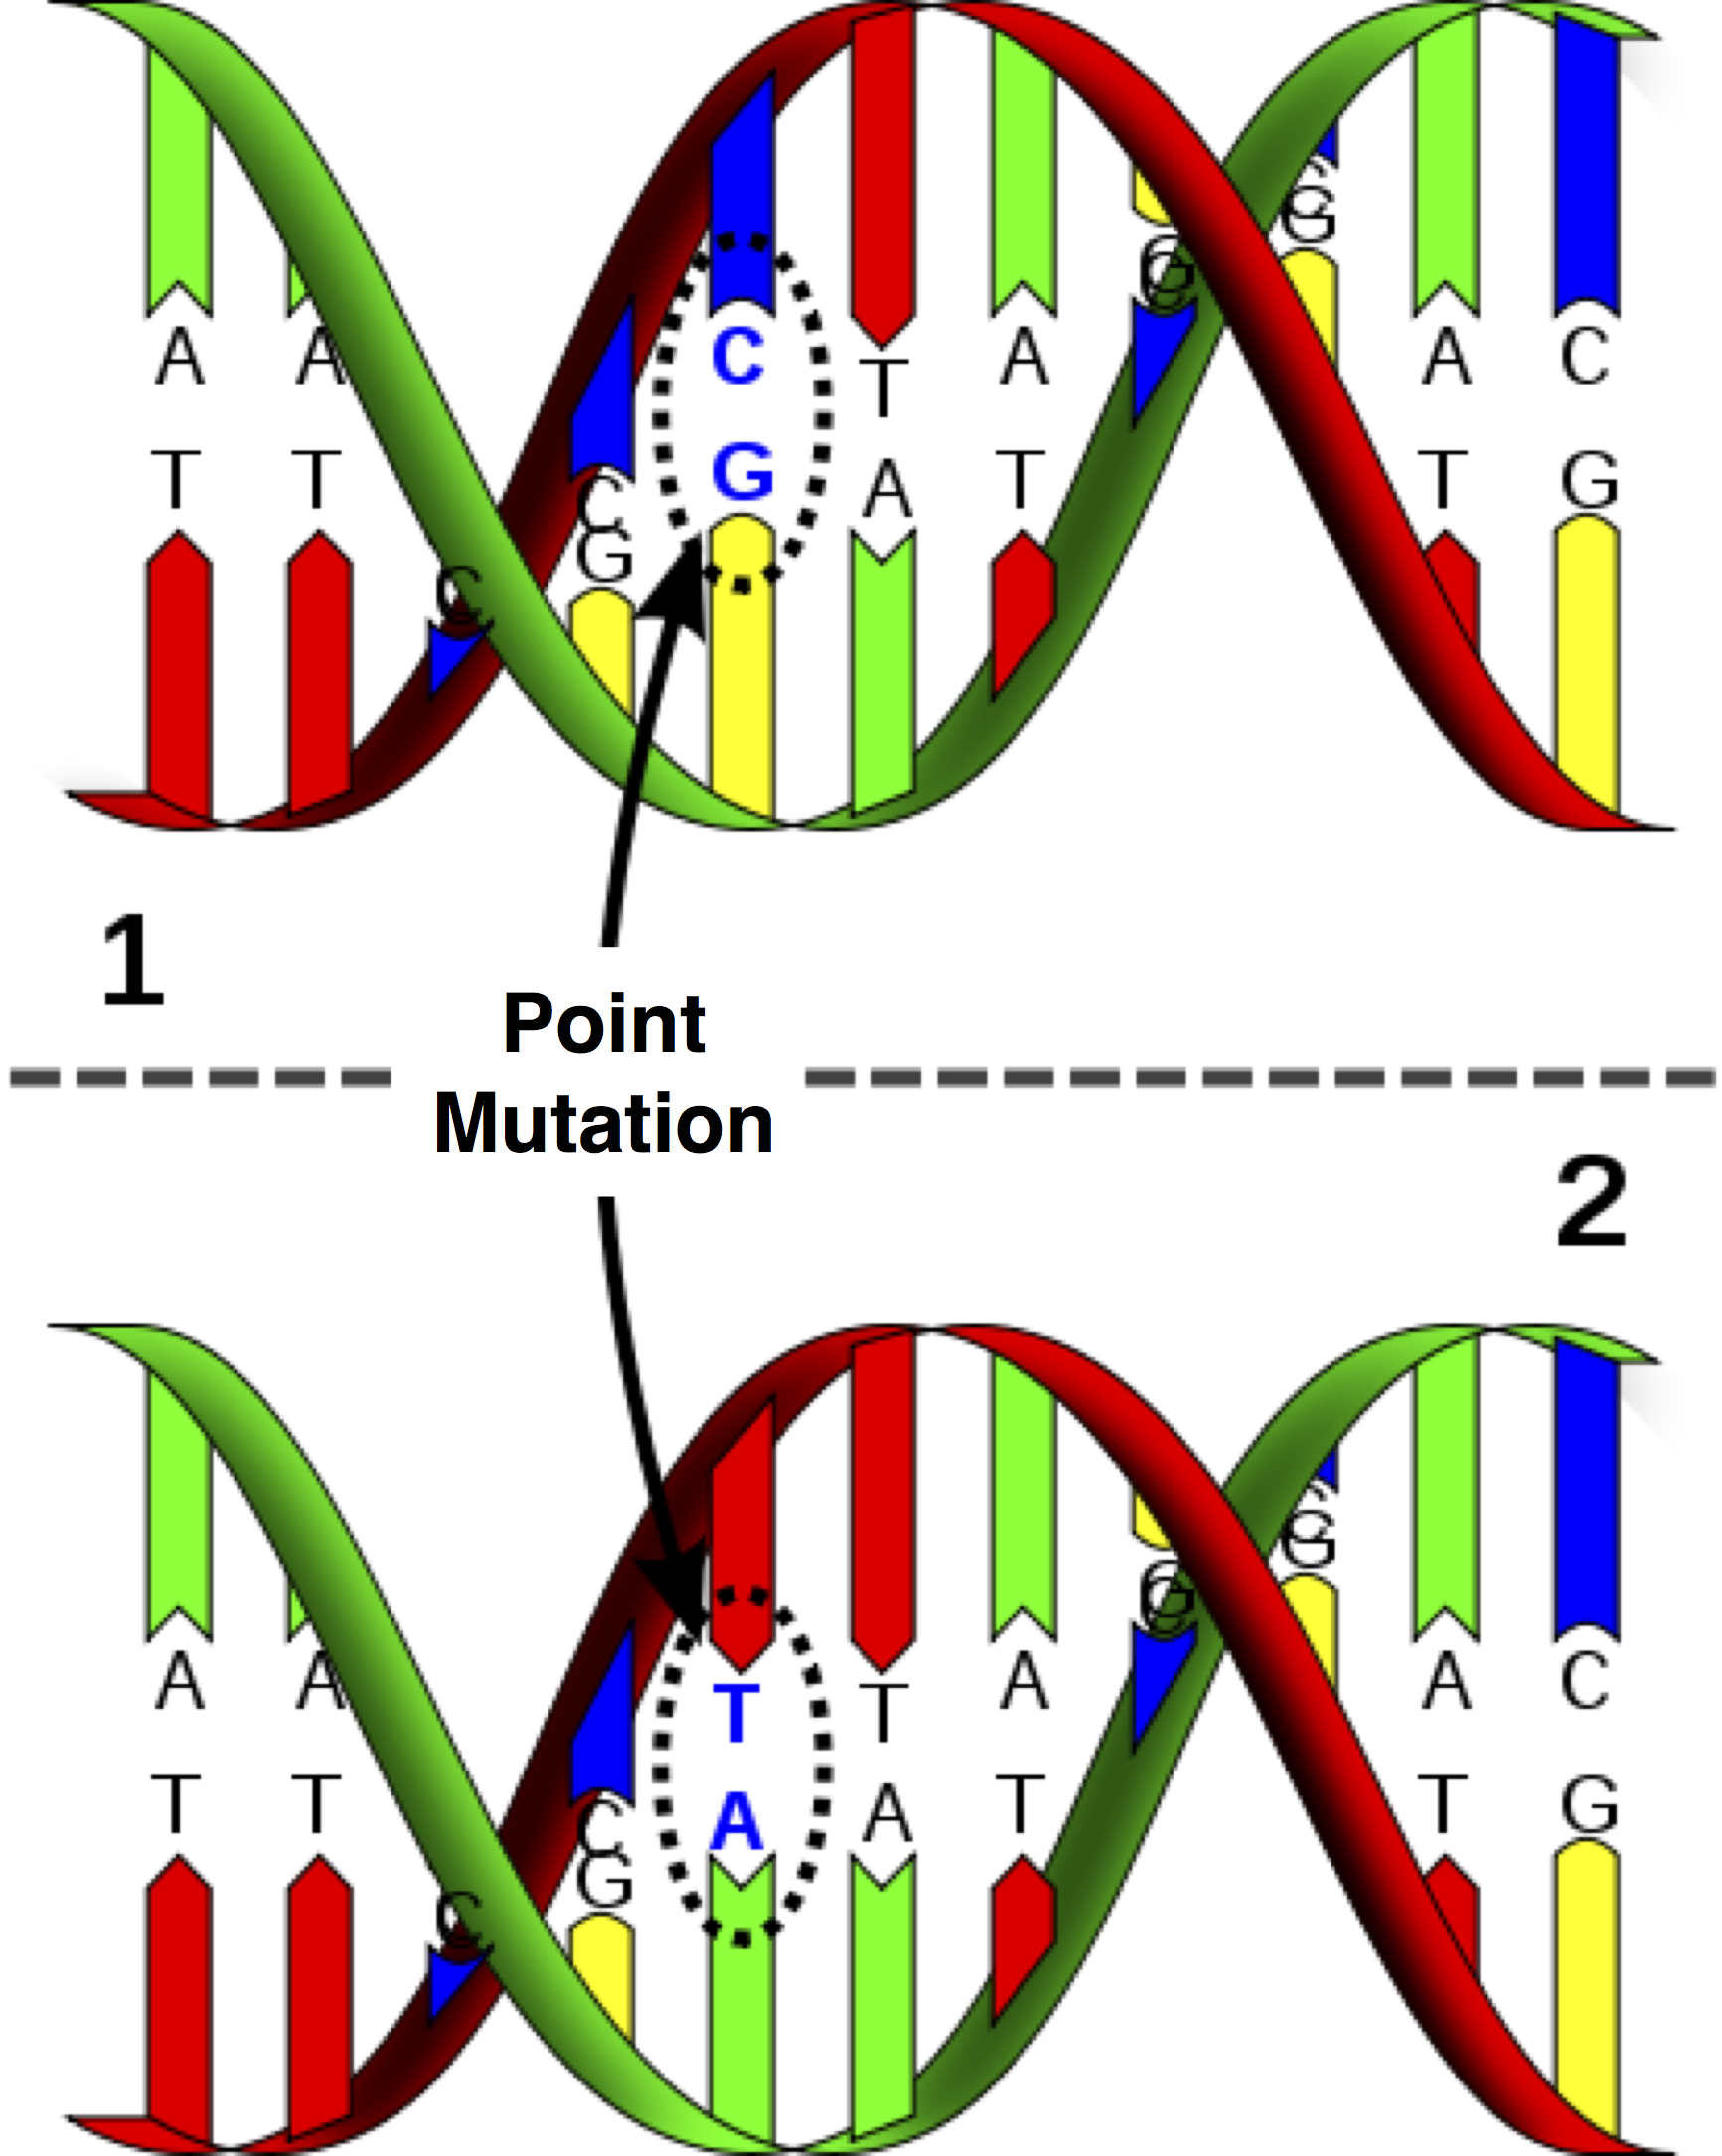 Puntmutaties zijn de eenvoudigste een meest voorkomende vorm van nucleïnezuurmutaties, waarbij in één enkele nucleotide een base wordt vervangen door een andere base. In het geval van DNA verandert een puntmutatie ook de complementaire base, zoals in de figuur waarbij een C-G paar verandert in een A-T paar.